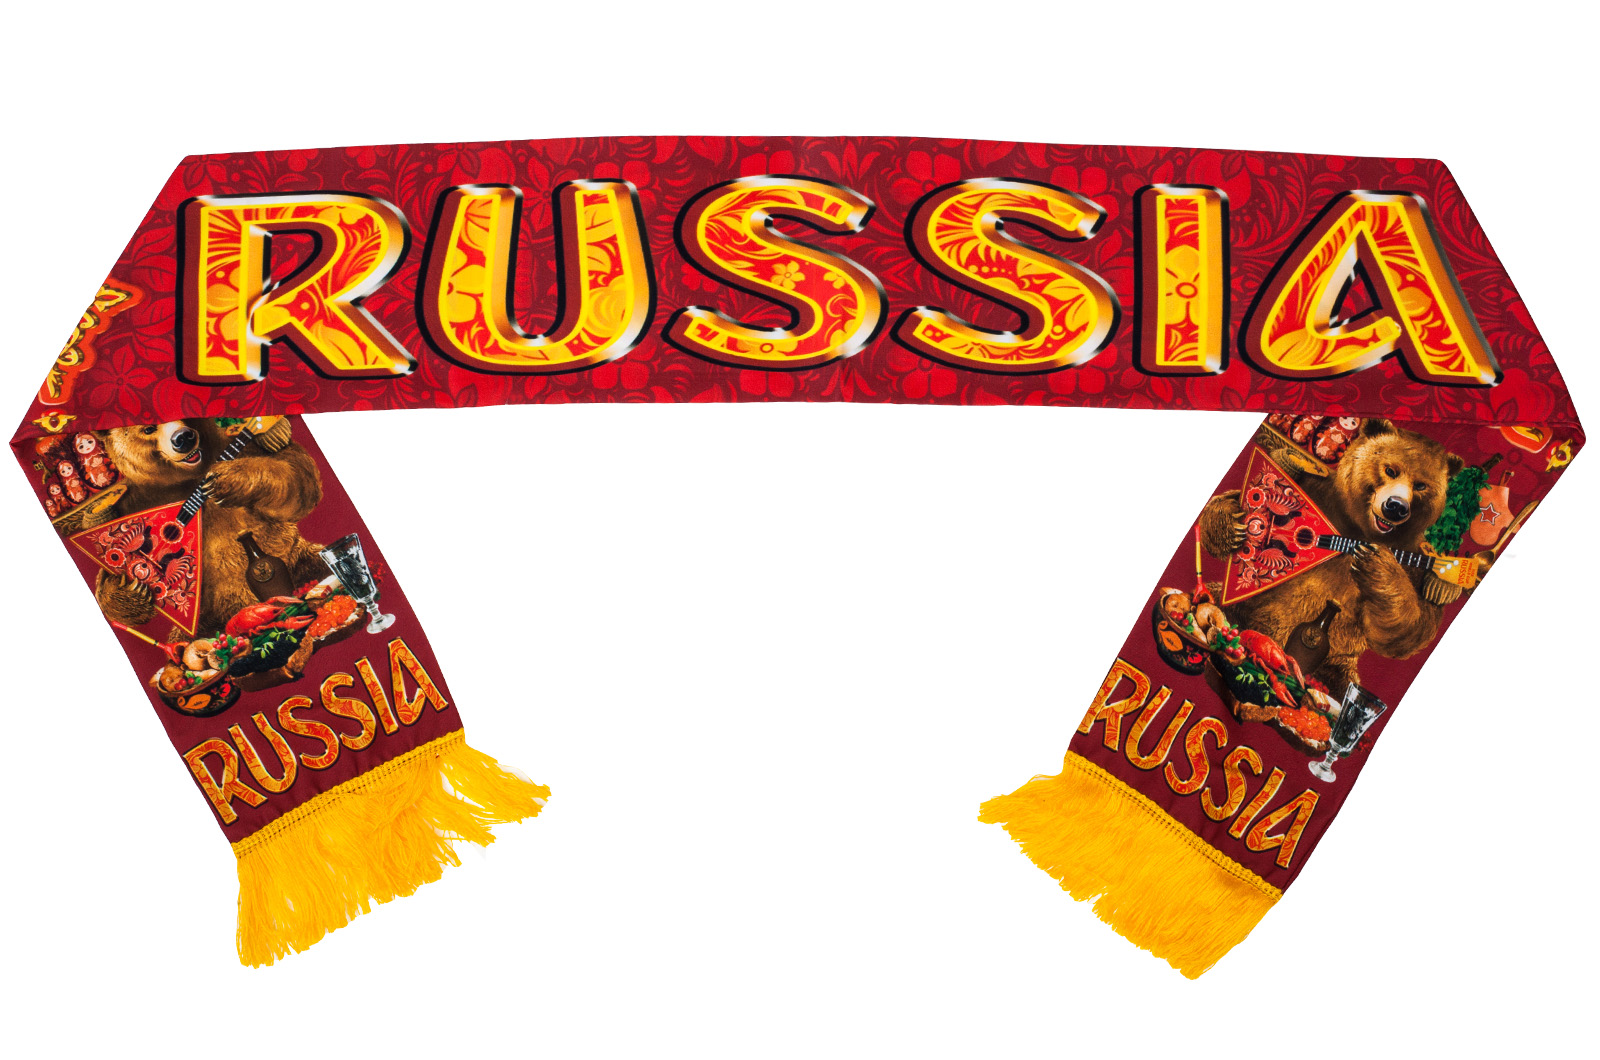 Двухсторонний шарф шелковый авторского дизайна с крупной надписью: "RUSSIA"